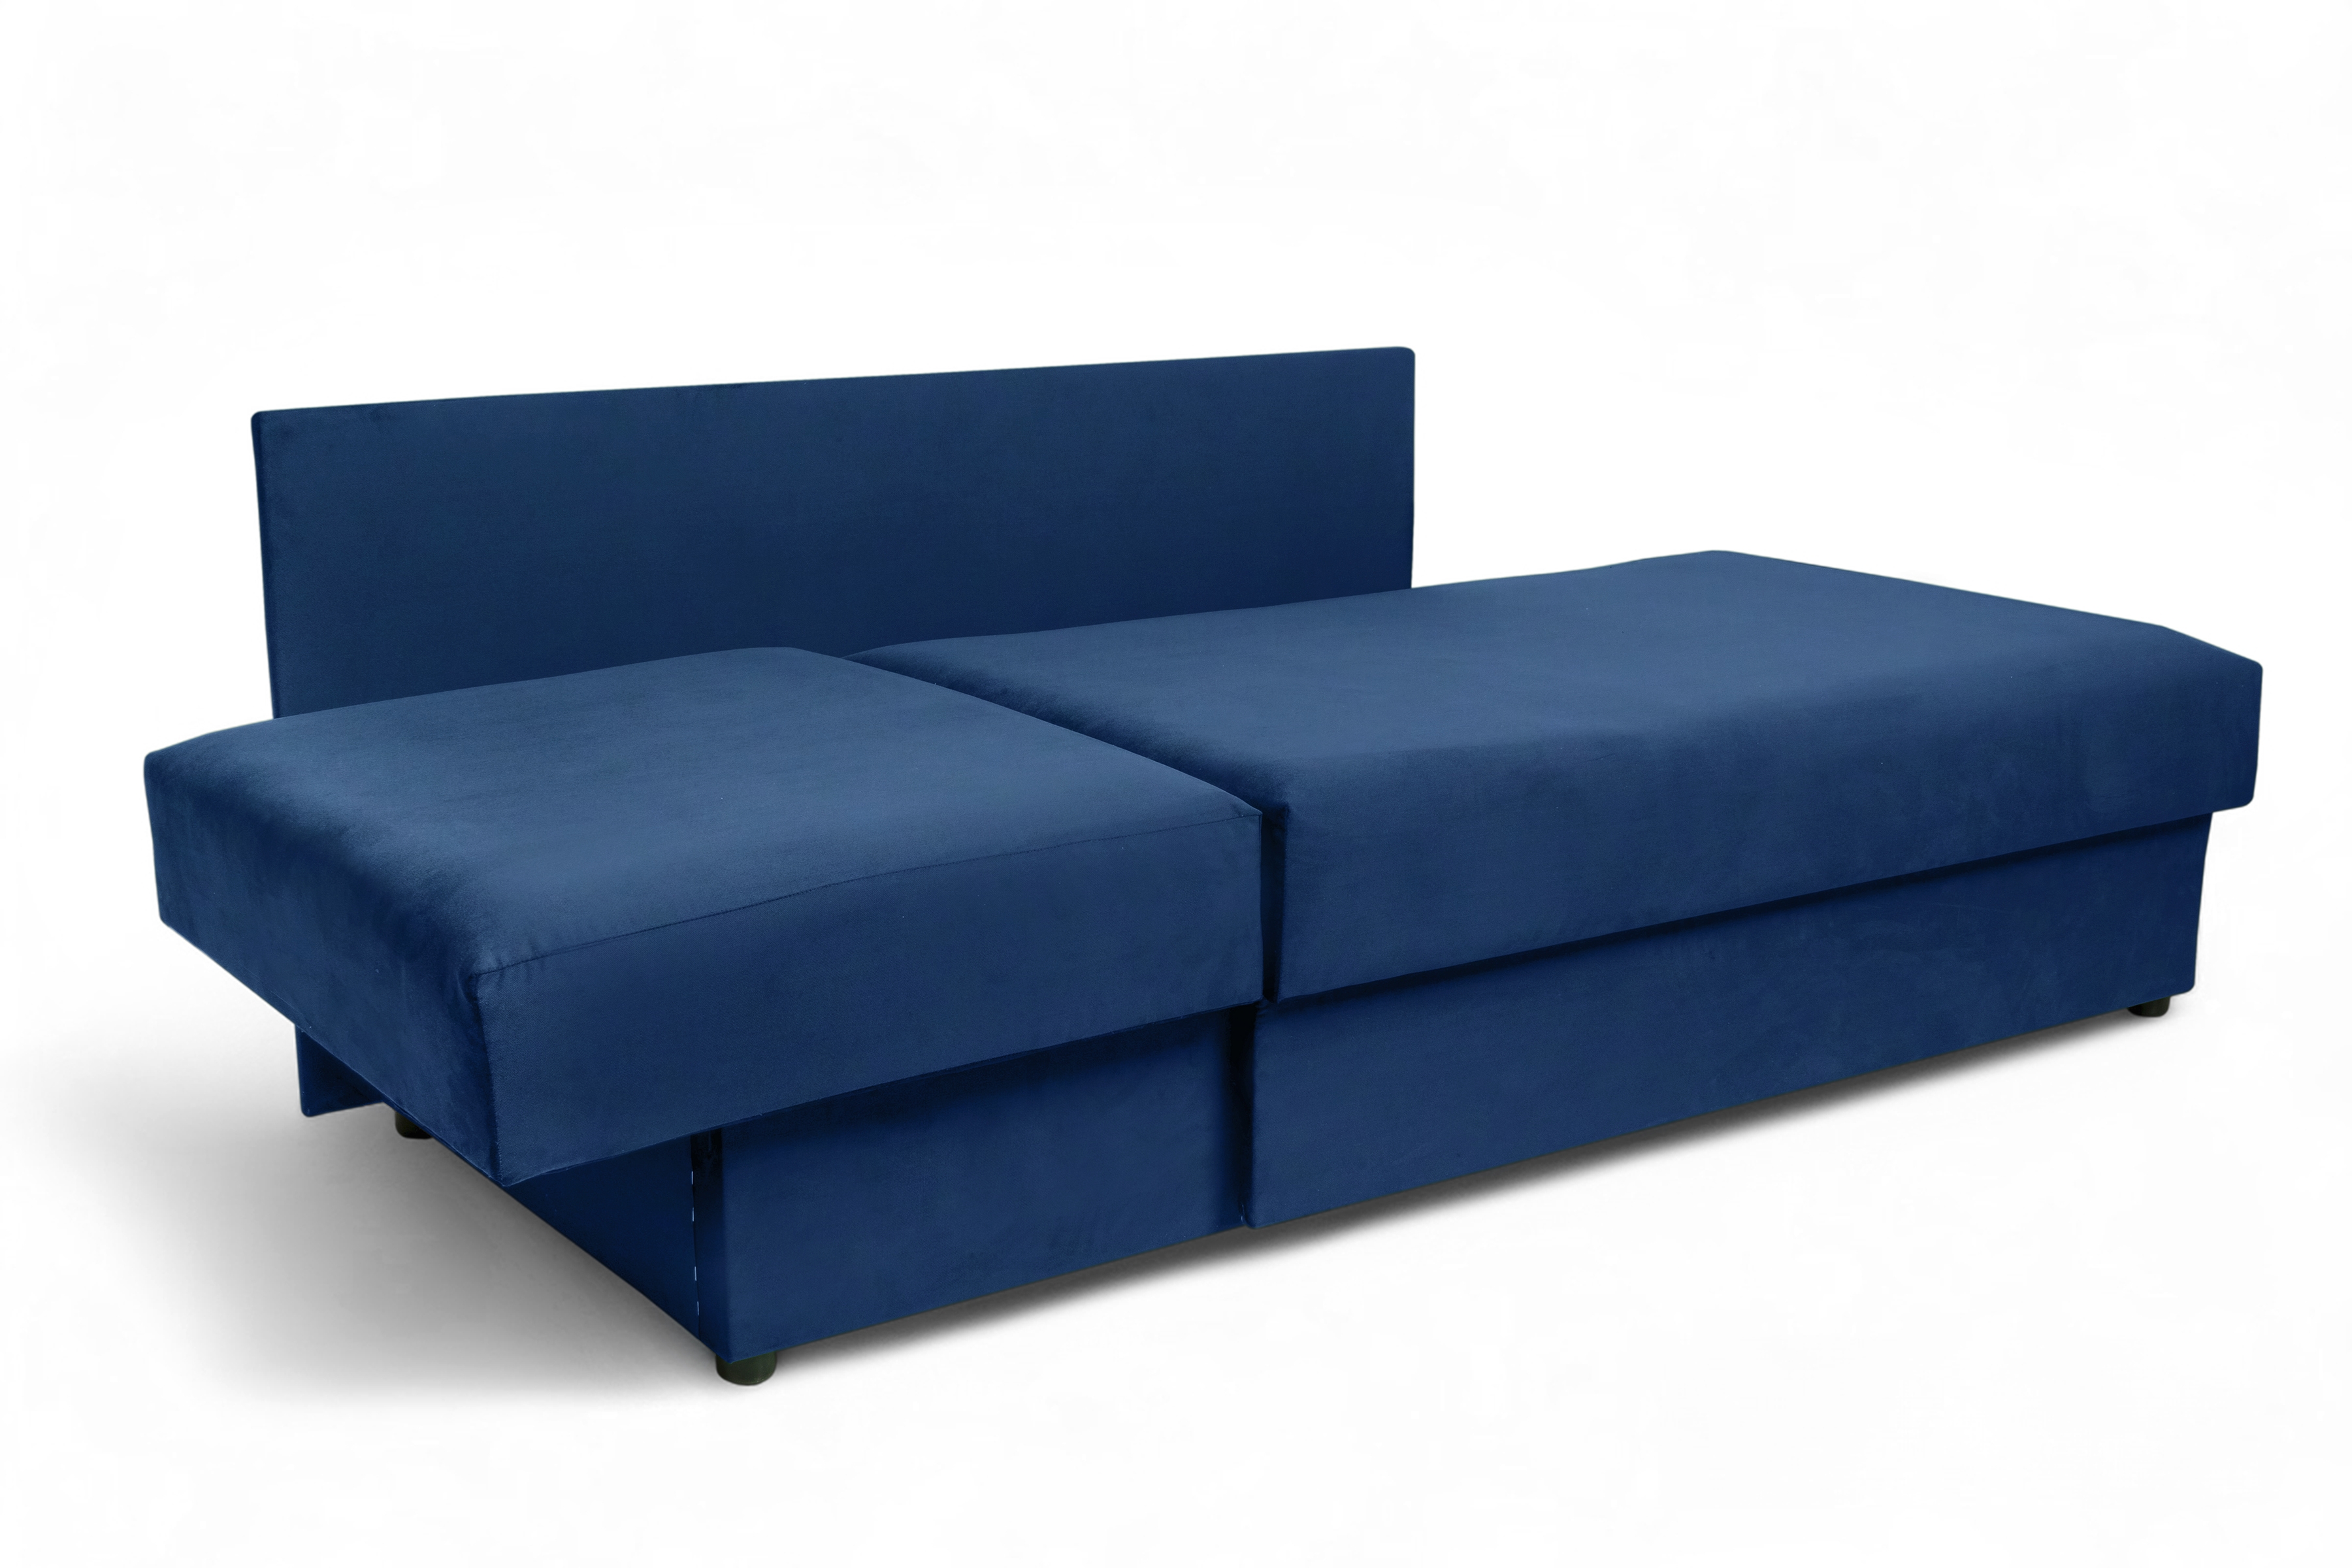 Tapczan/łóżko prawostronny rozkładany z pojemnikiem Maciek - niebieski welur Velluto 25 Tapczan/łóżko prawostronny rozkładany z pojemnikiem Maciek - niebieski welur Velluto 25